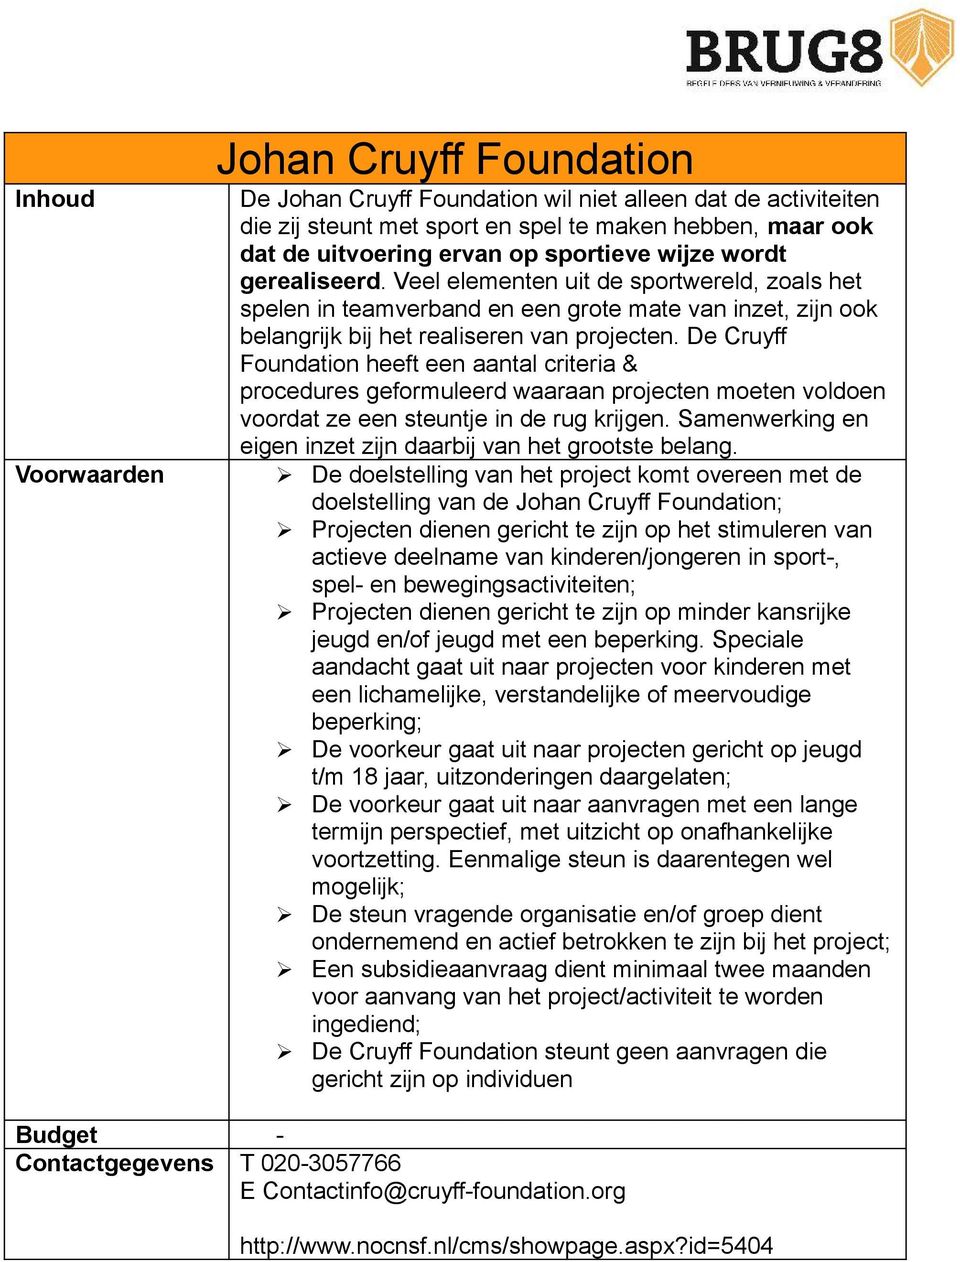 De Cruyff Foundation heeft een aantal criteria & procedures geformuleerd waaraan projecten moeten voldoen voordat ze een steuntje in de rug krijgen.